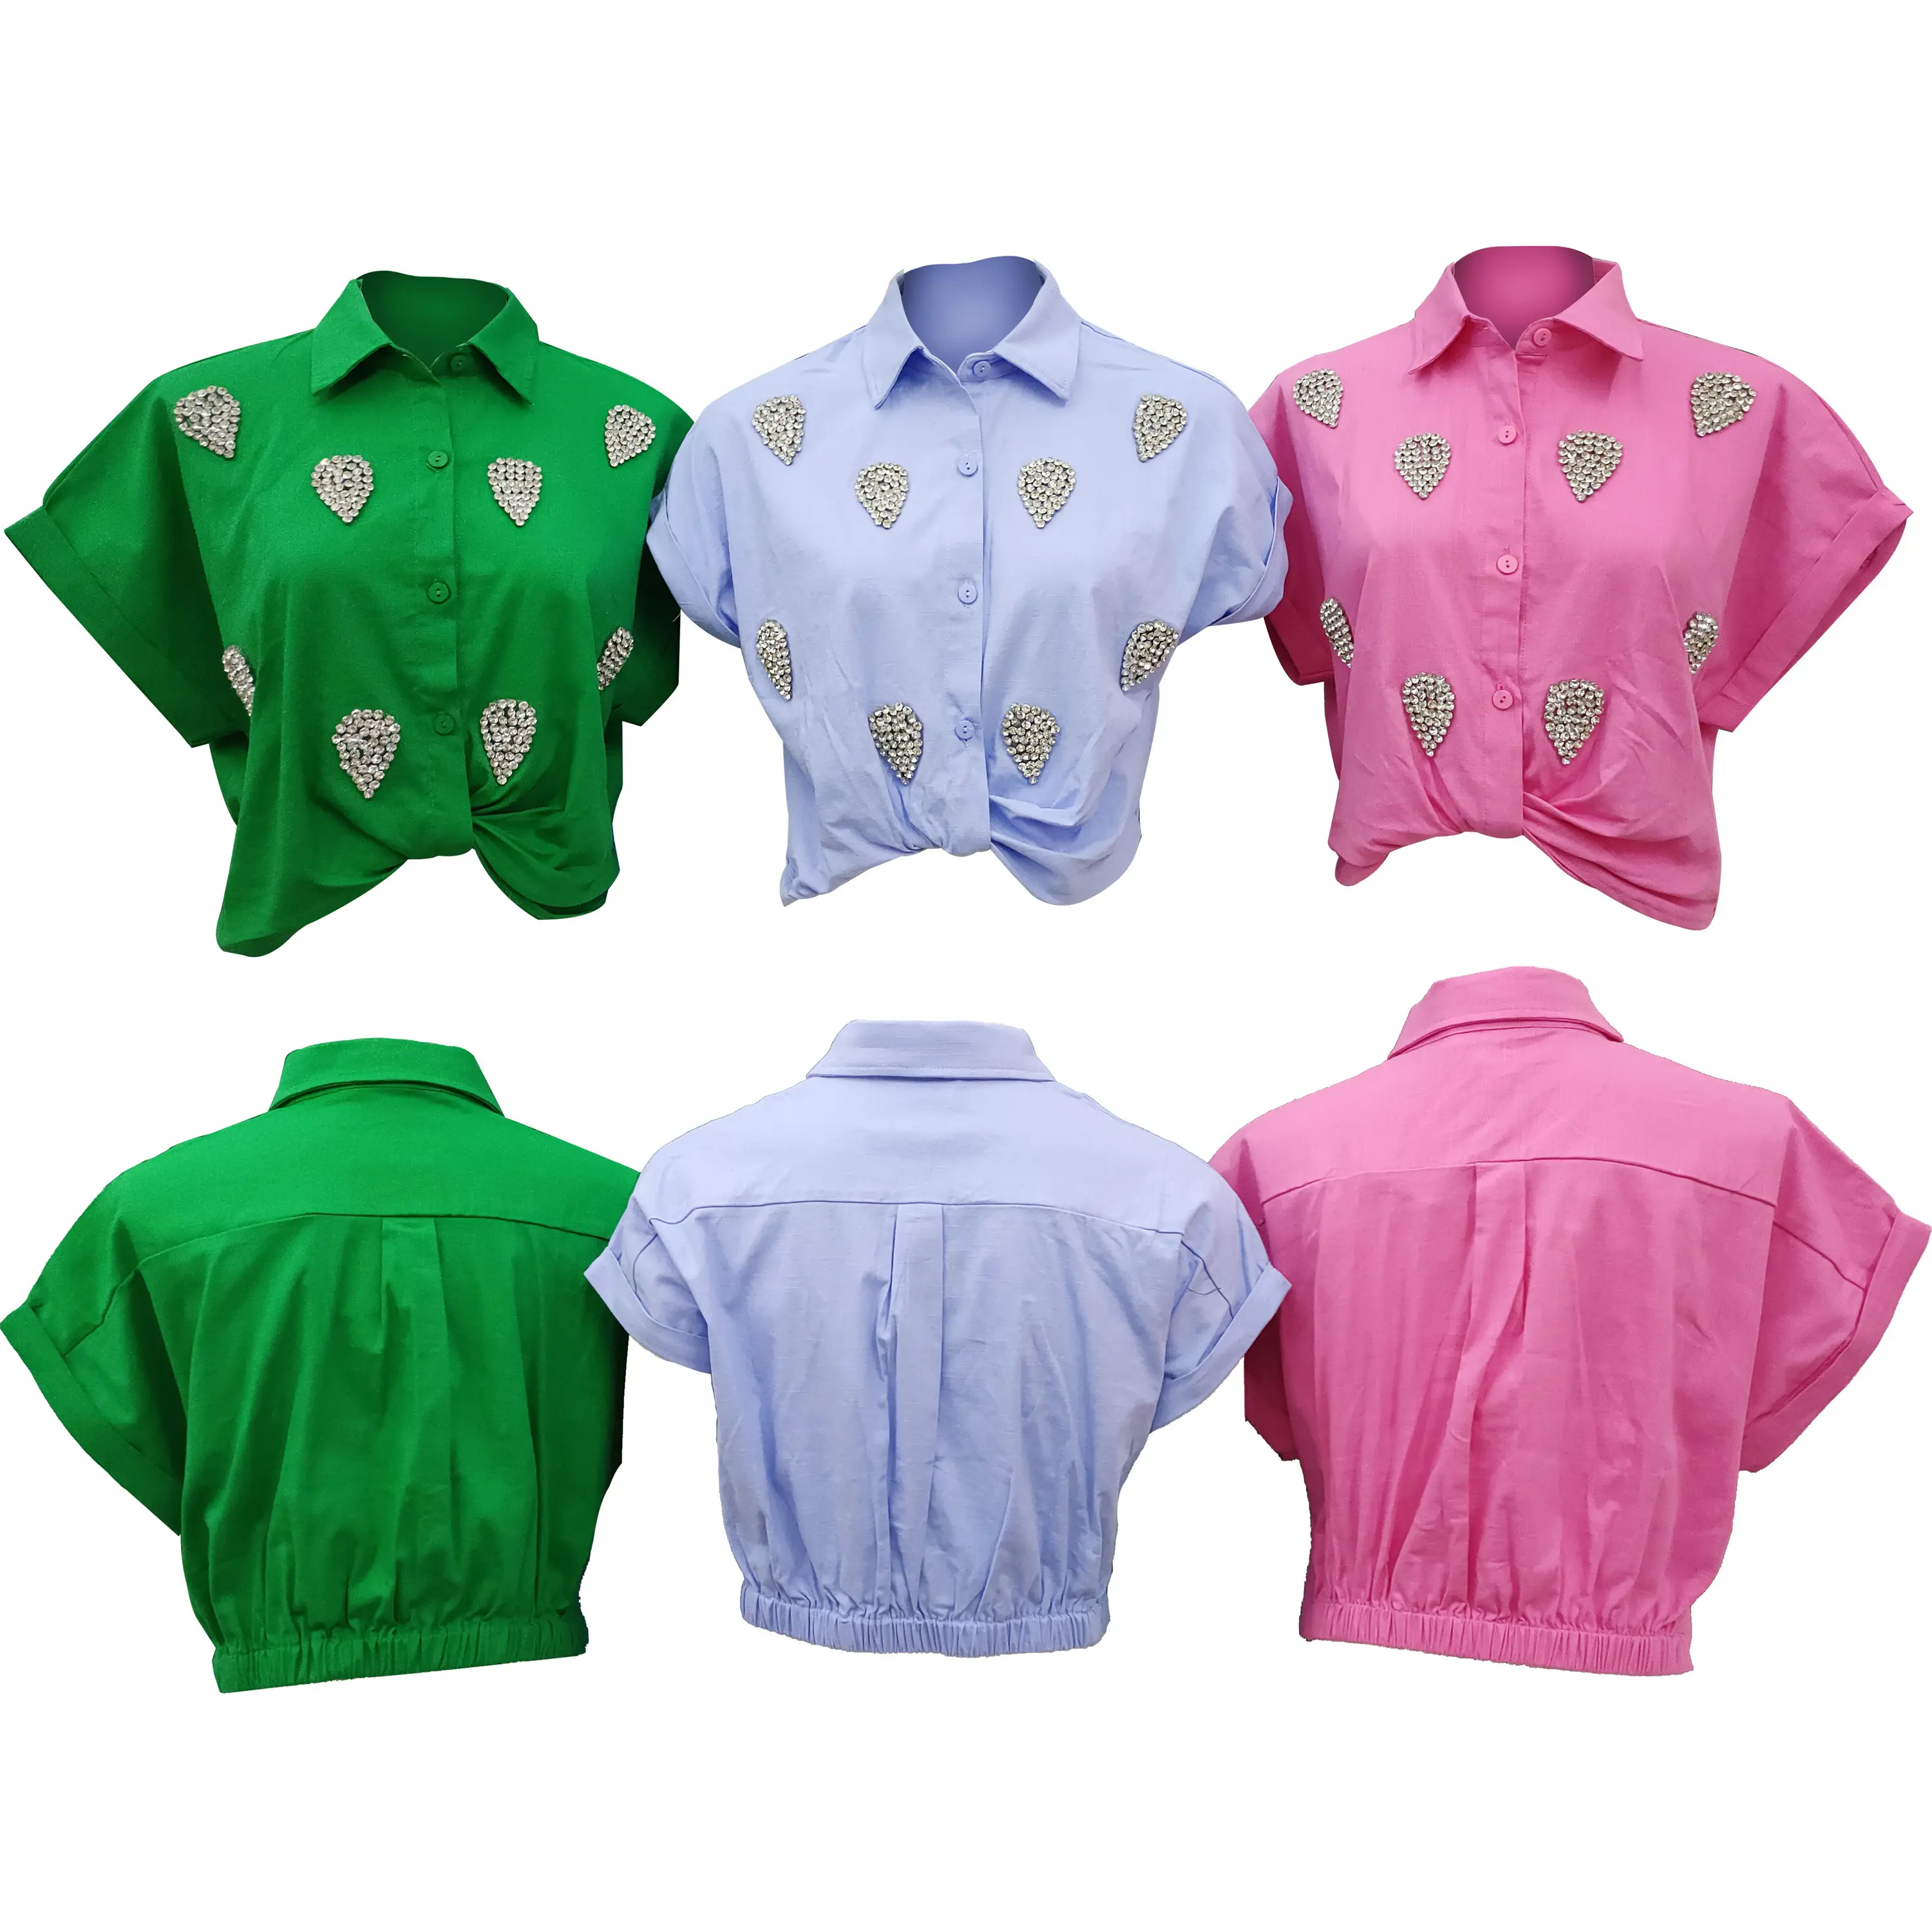 Blus & kemeja cepat kering anti-kerut & anti-menyusut ODM pakaian untuk sehari-hari musim panas musim semi modis